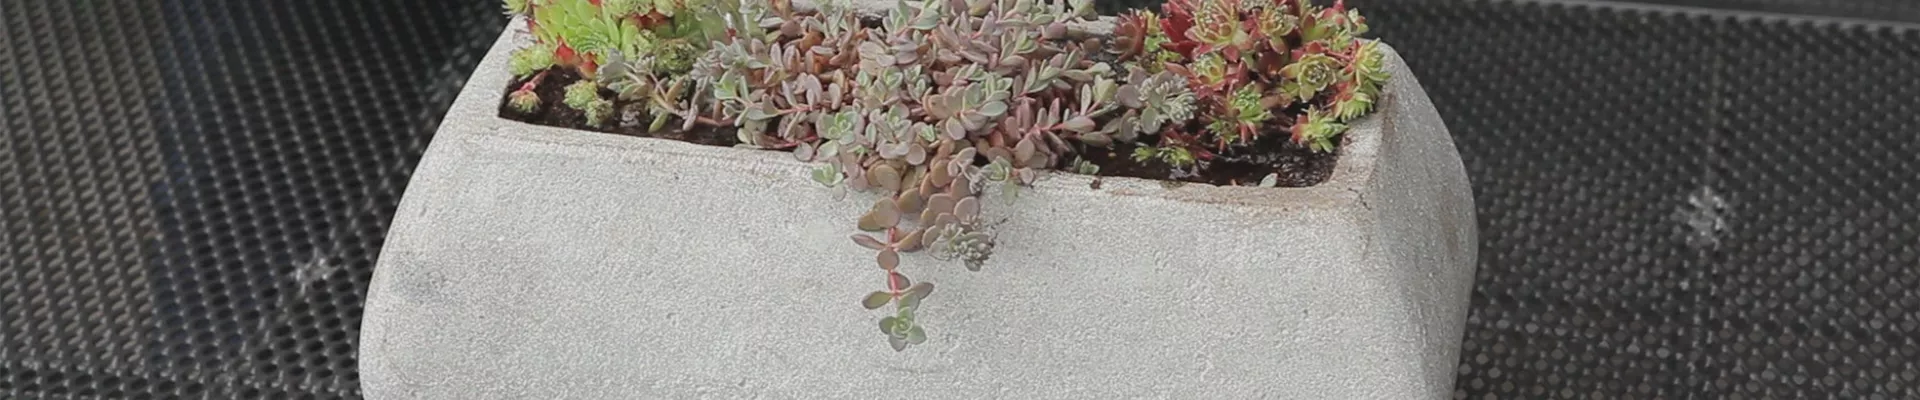 Steingartengewächse - Einpflanzen in ein Gefäß (thumbnail).jpg